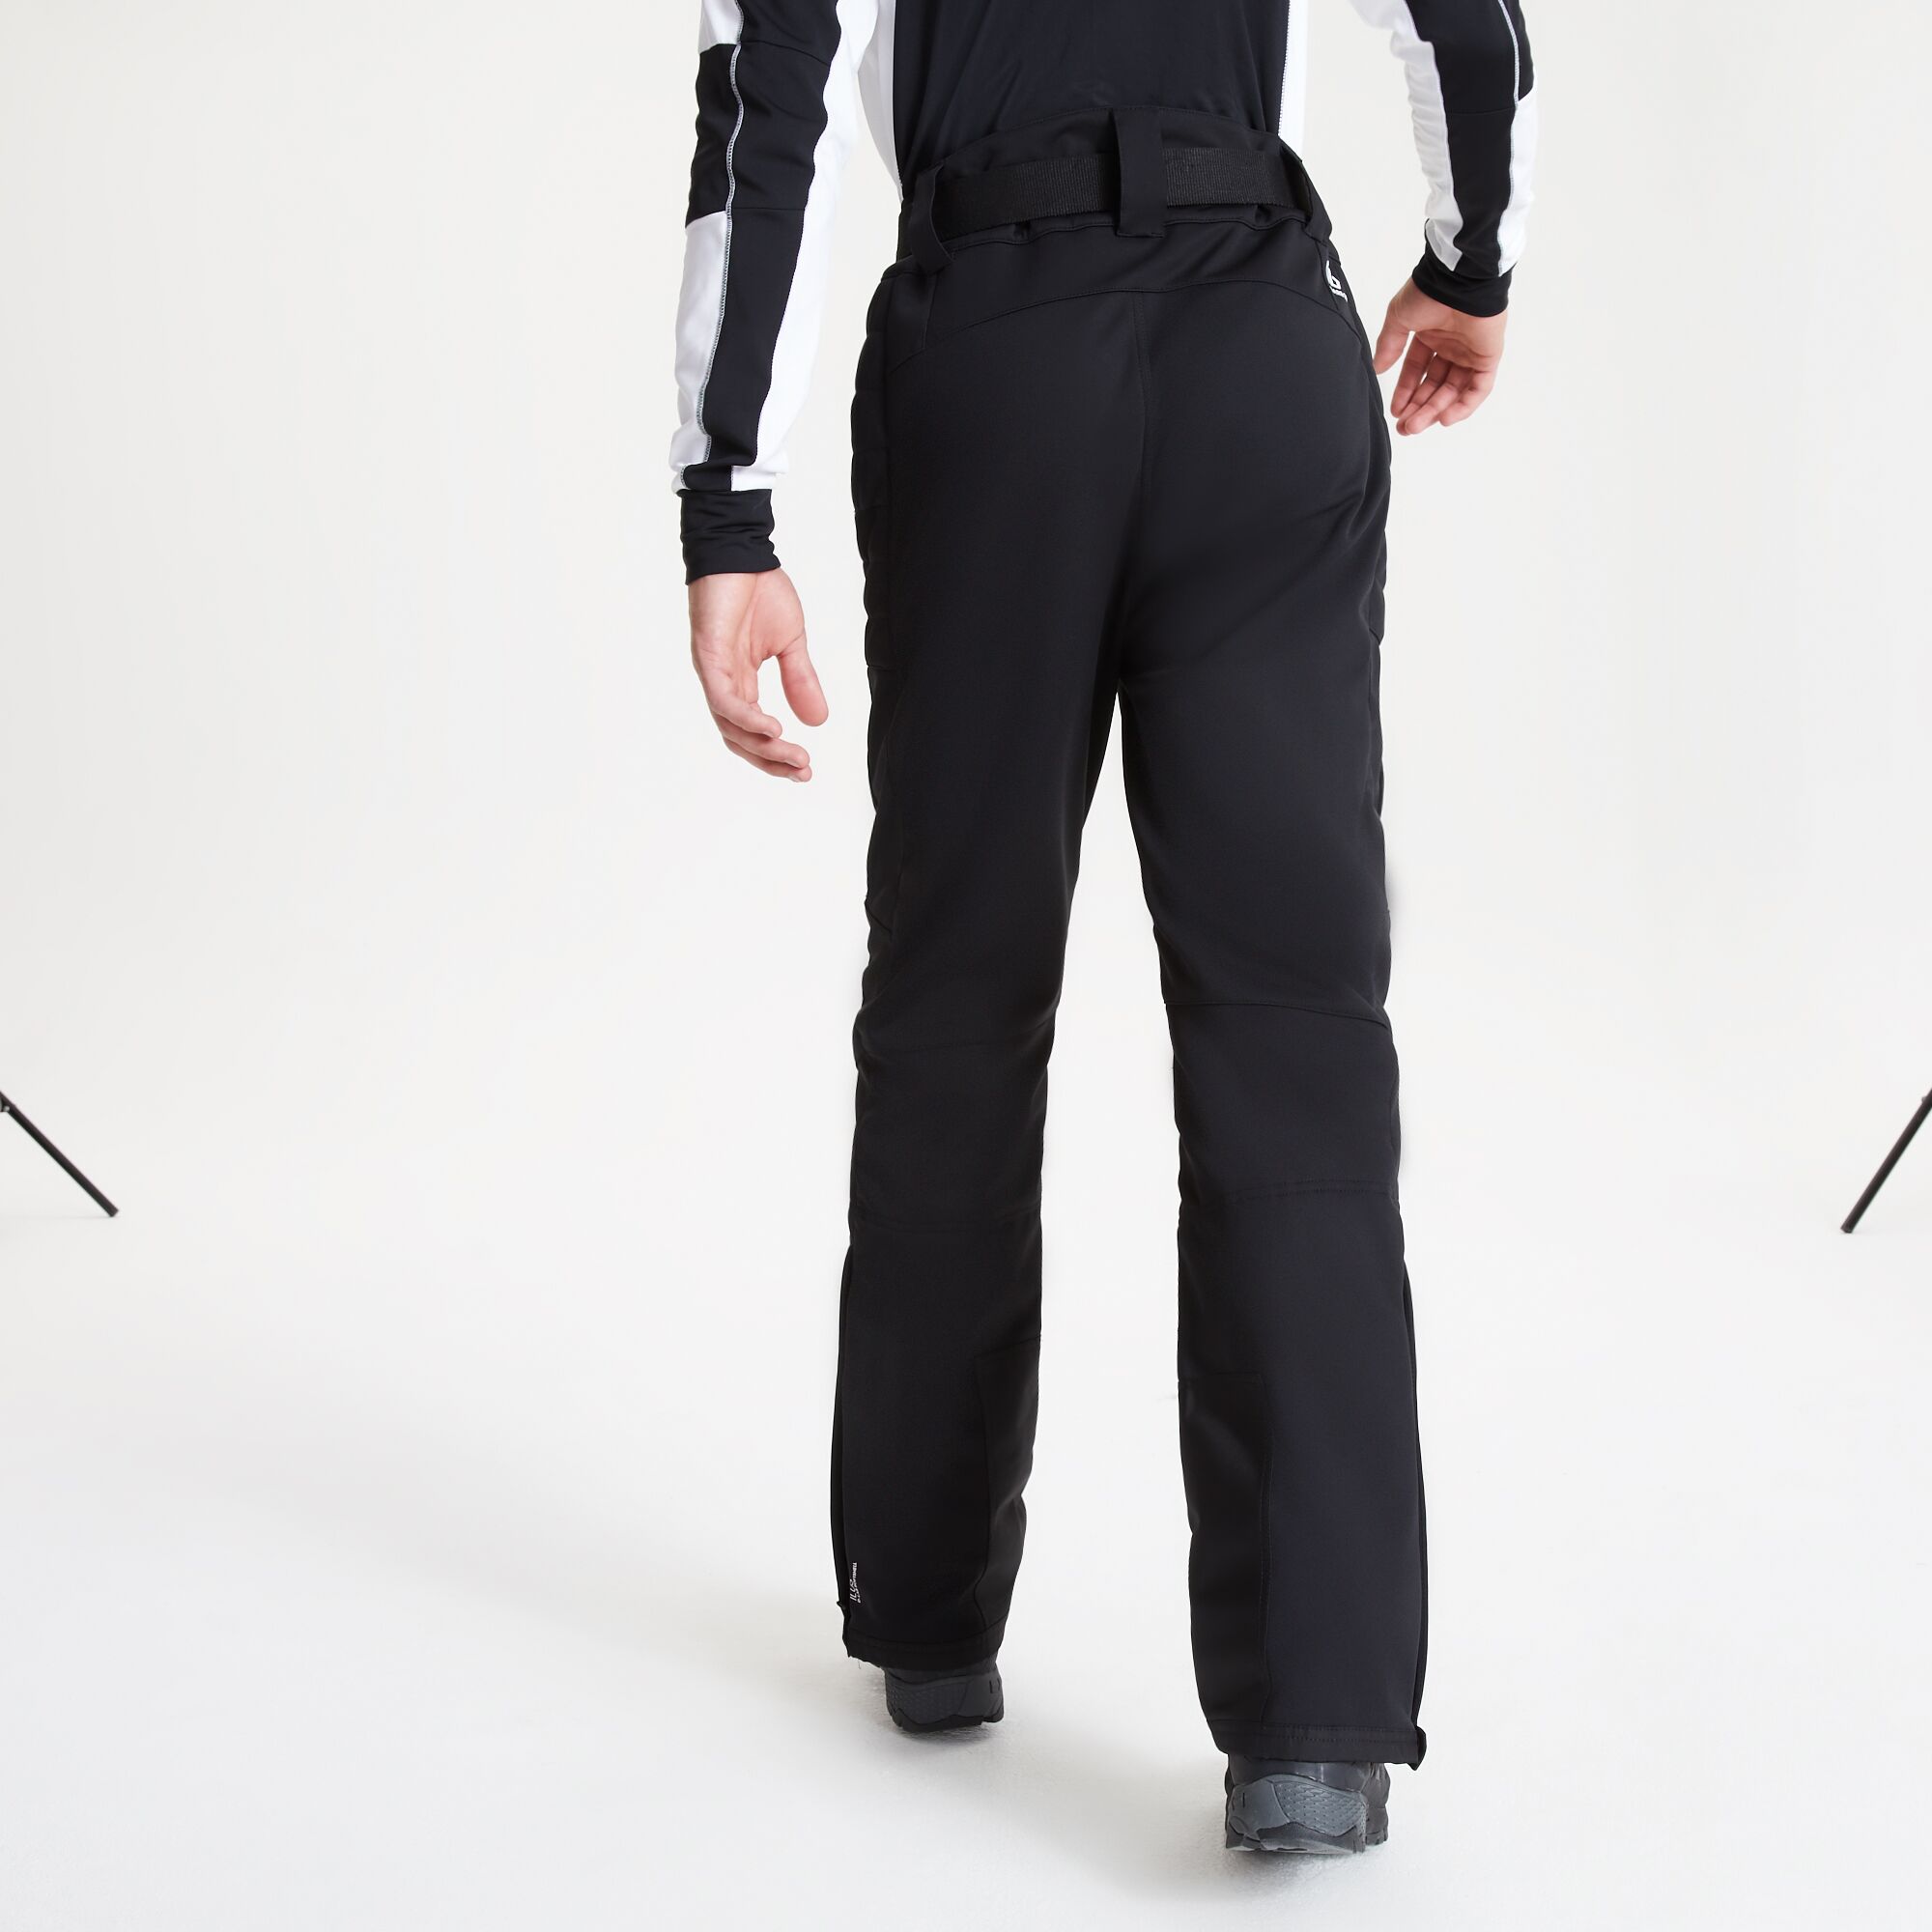 DARE2B Womens ATTRACT II BLACK Ski Pants Ladies Salopettes Size 22-30 REG LEG 